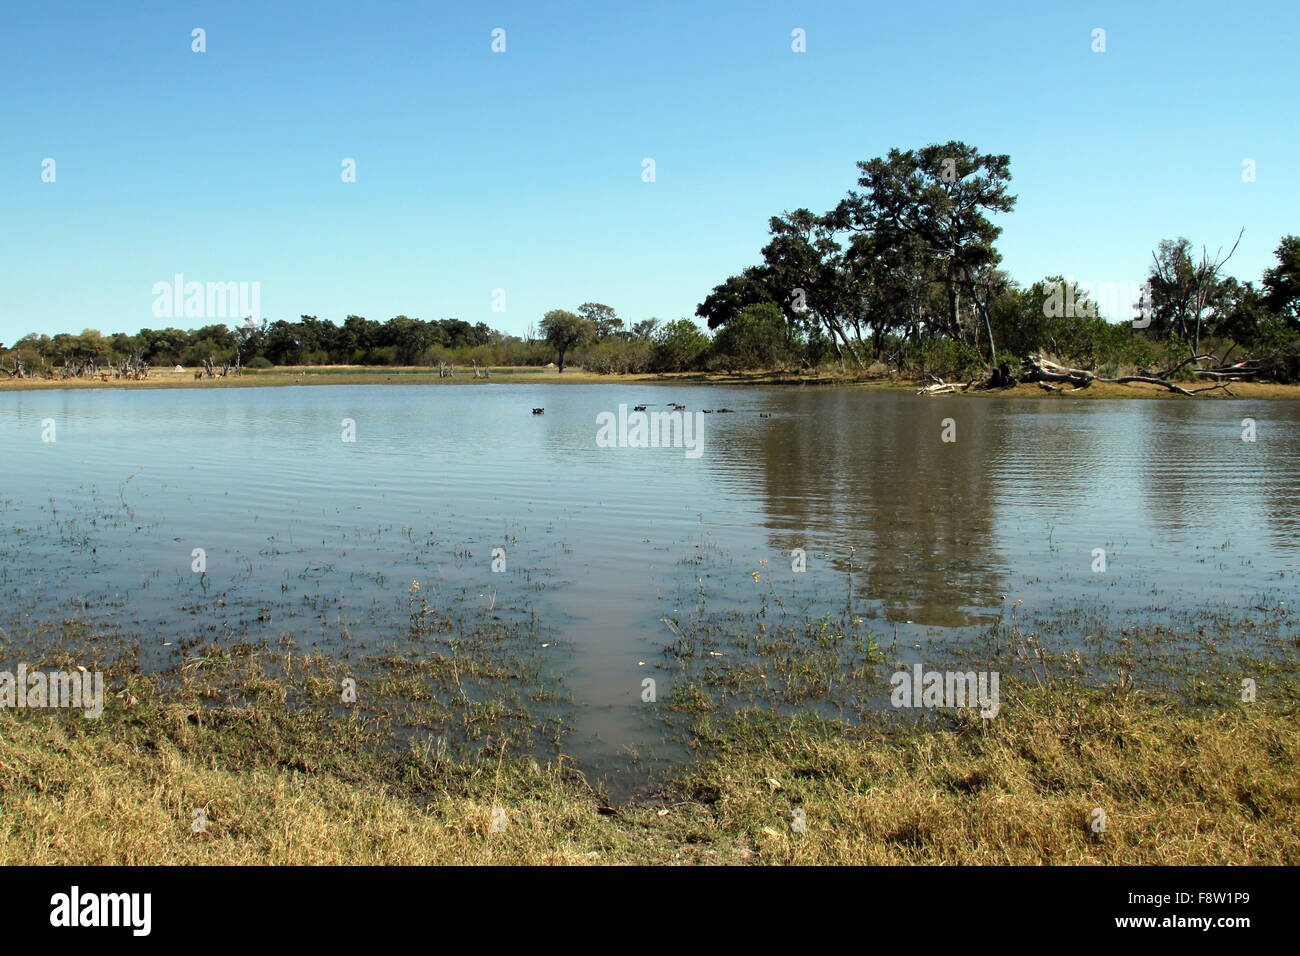 Hippo Pond in Moremi Game Reserve, Botswana Stock Photo